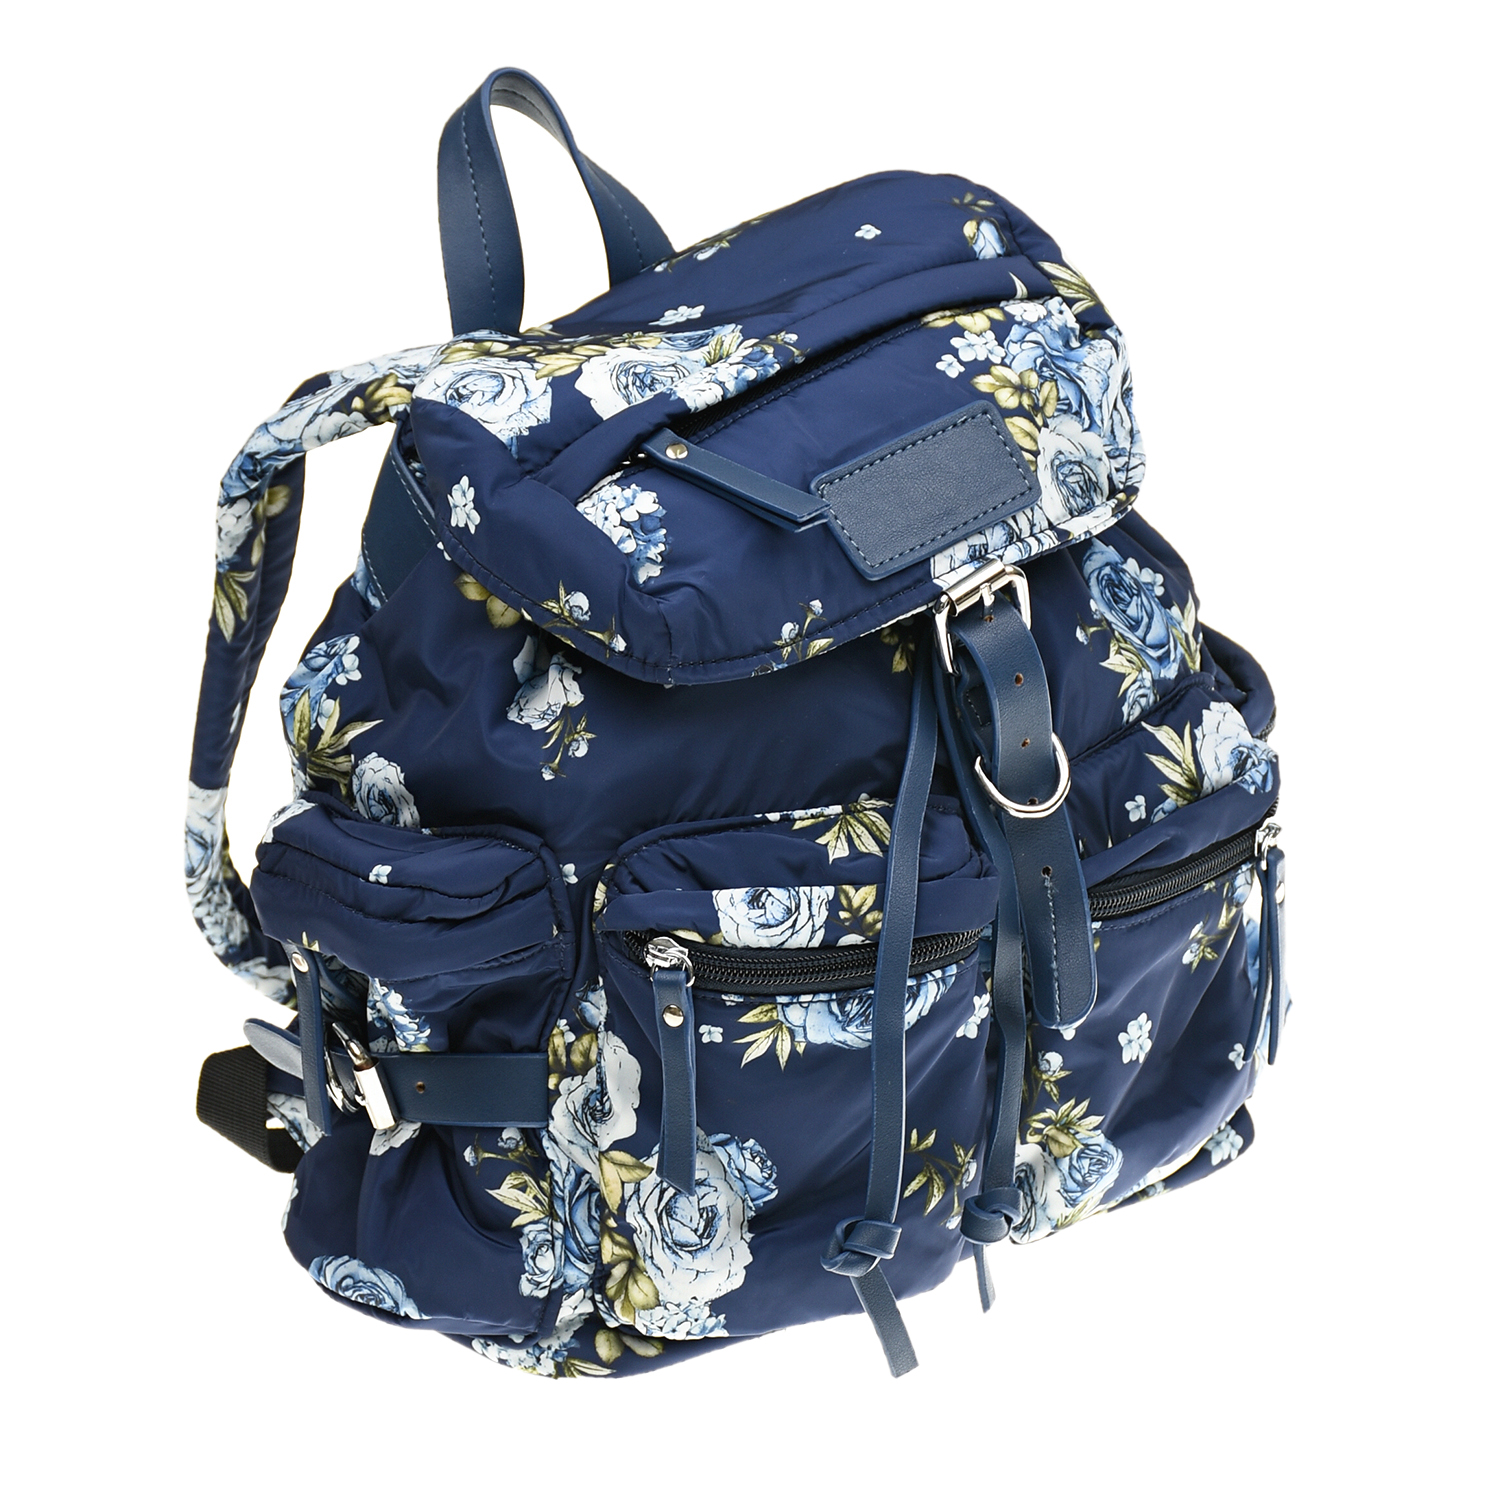 Синий рюкзак с цветочным принтом Monnalisa детский, размер unica - фото 2